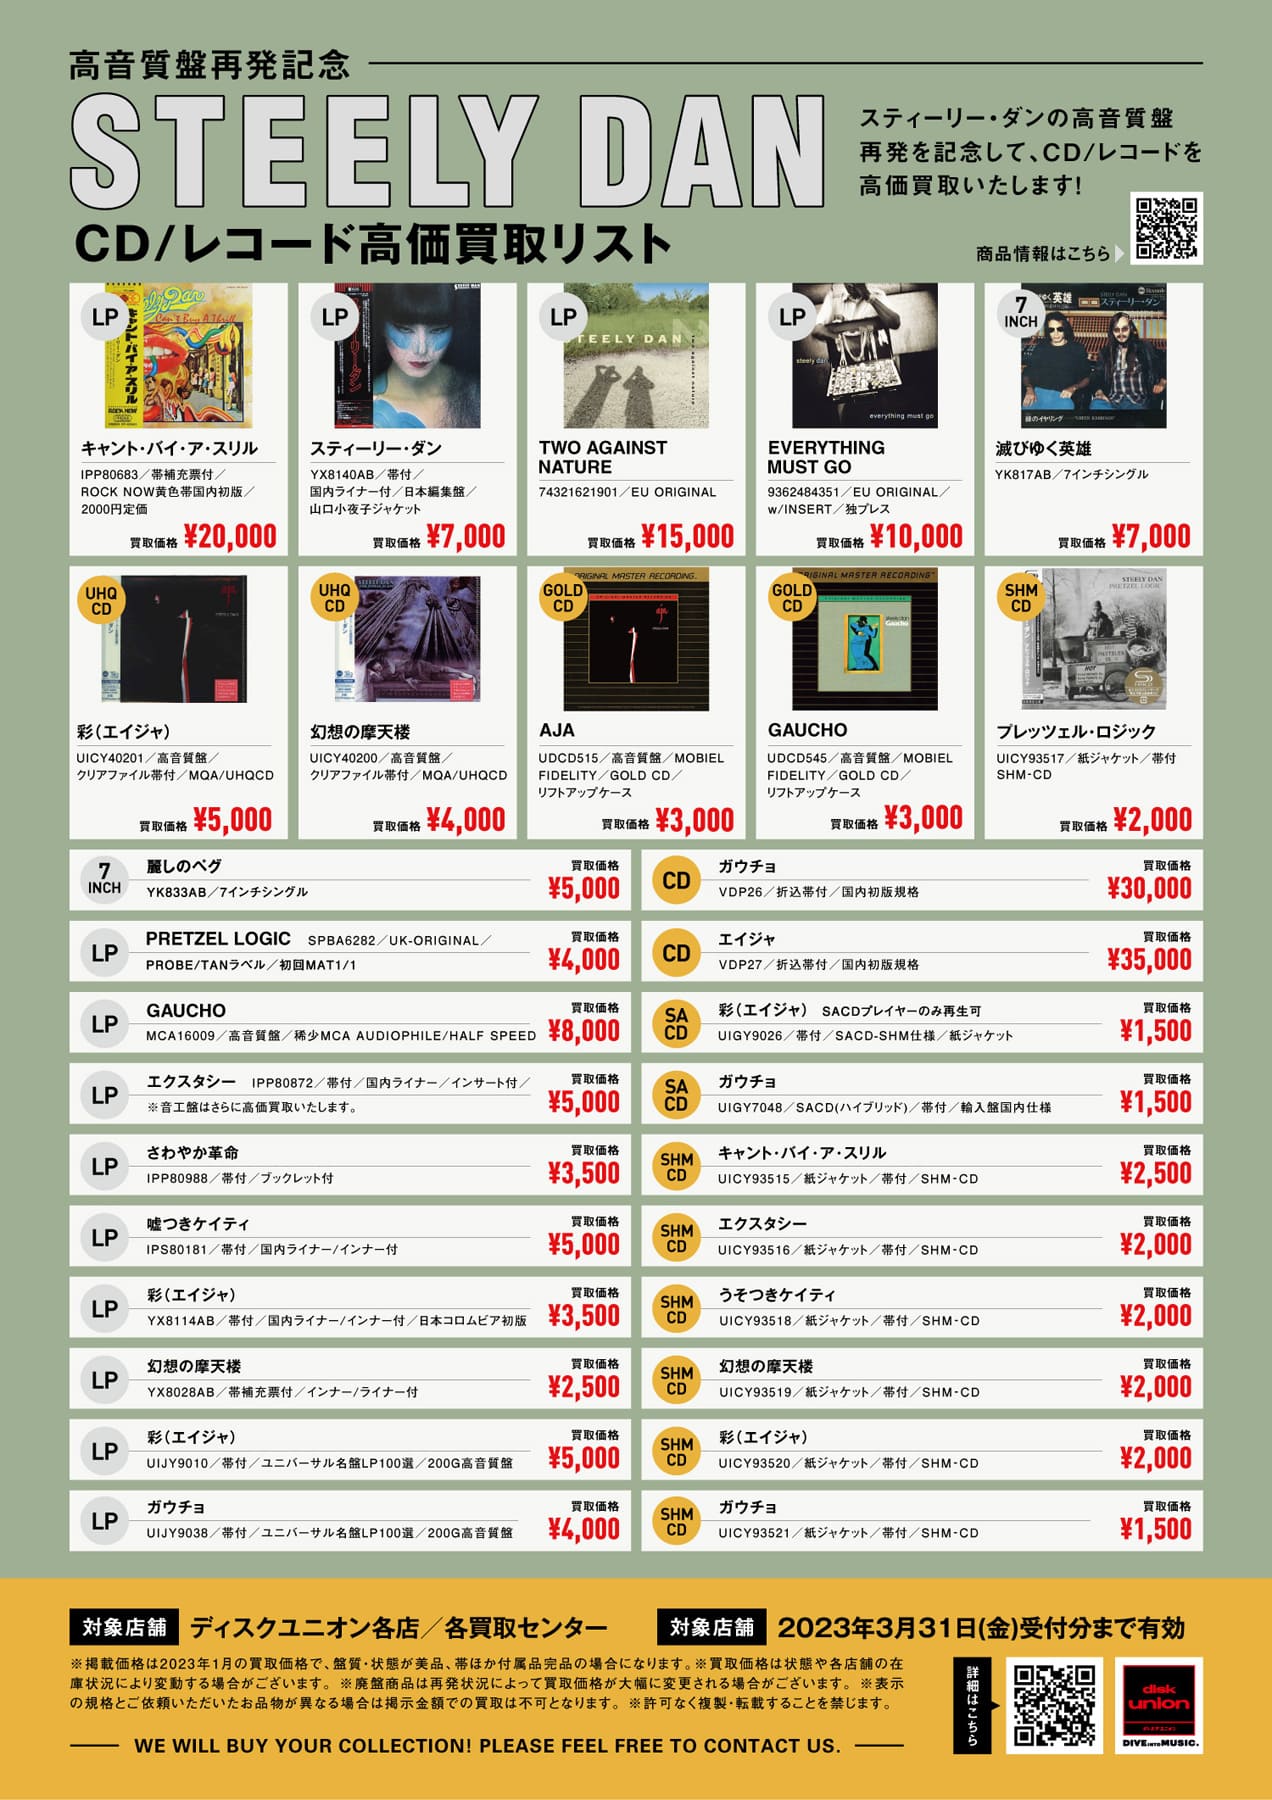 【ROCK/PROGRE】スティーリー・ダン CD/レコード高価買取リスト